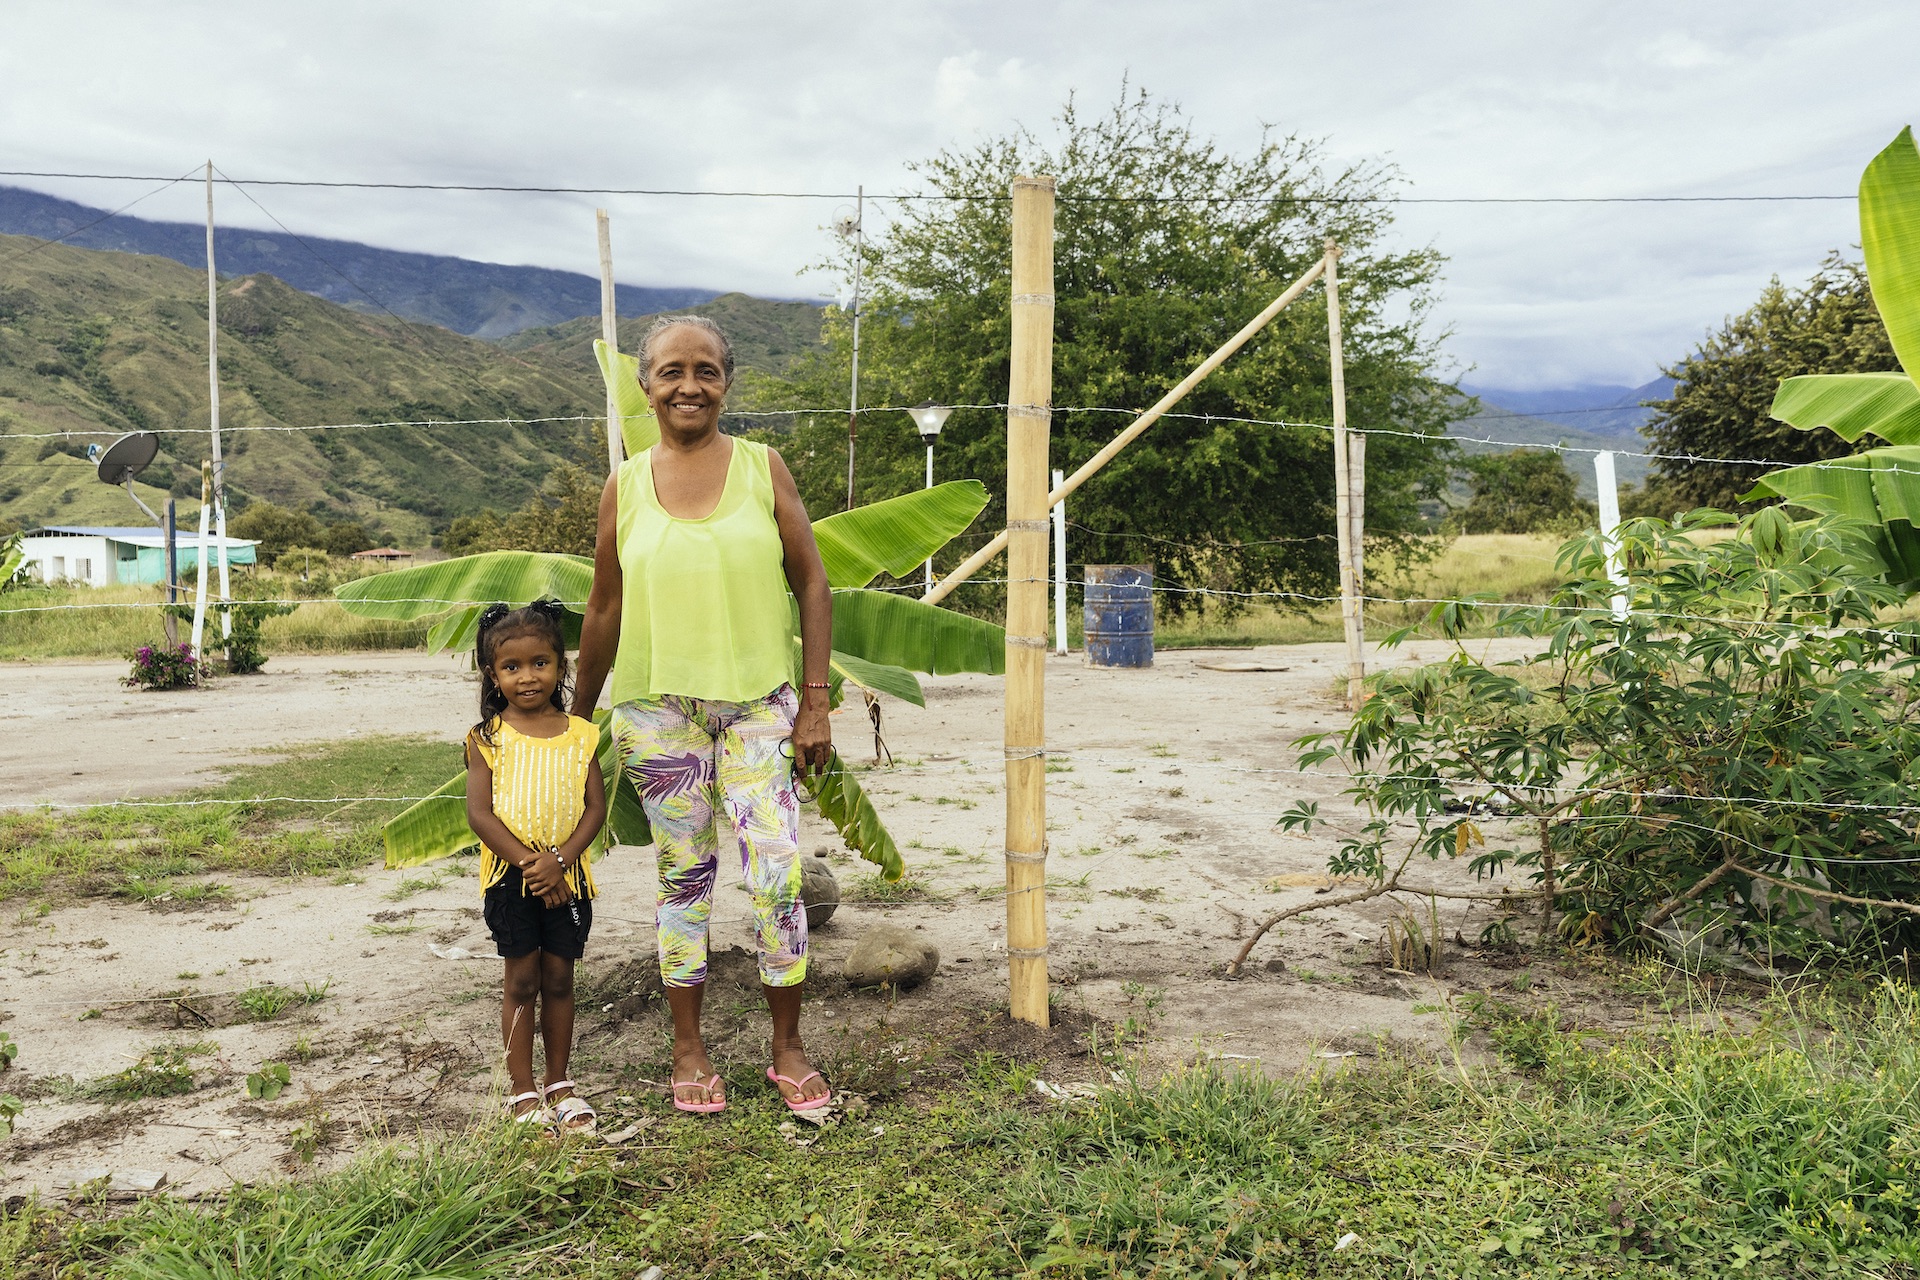 Mujer con una niña sonriendo, detrás una cerca de alambre de púas, planta de plátano y montañas